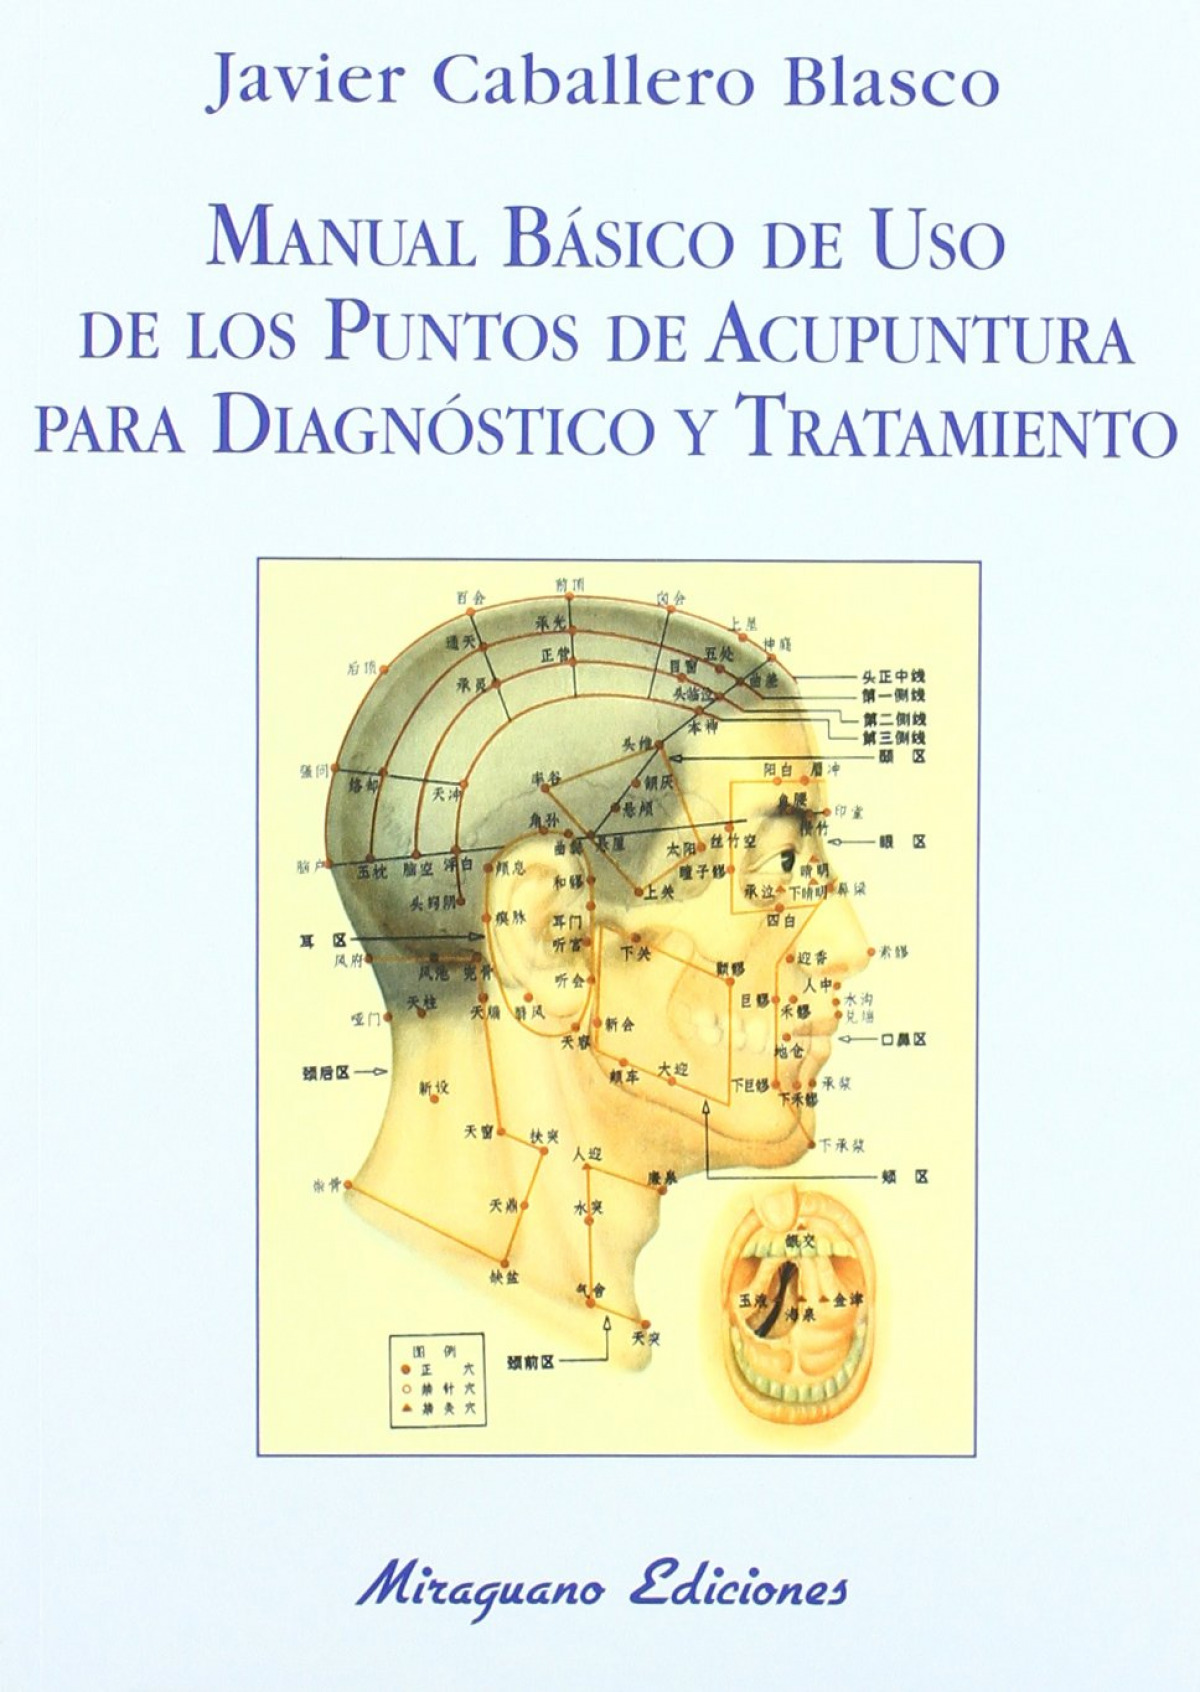 Manual Básico de uso de los Puntos de Acupuntura para Diagnóstico y Tratamiento - Caballero Blasco, Javier